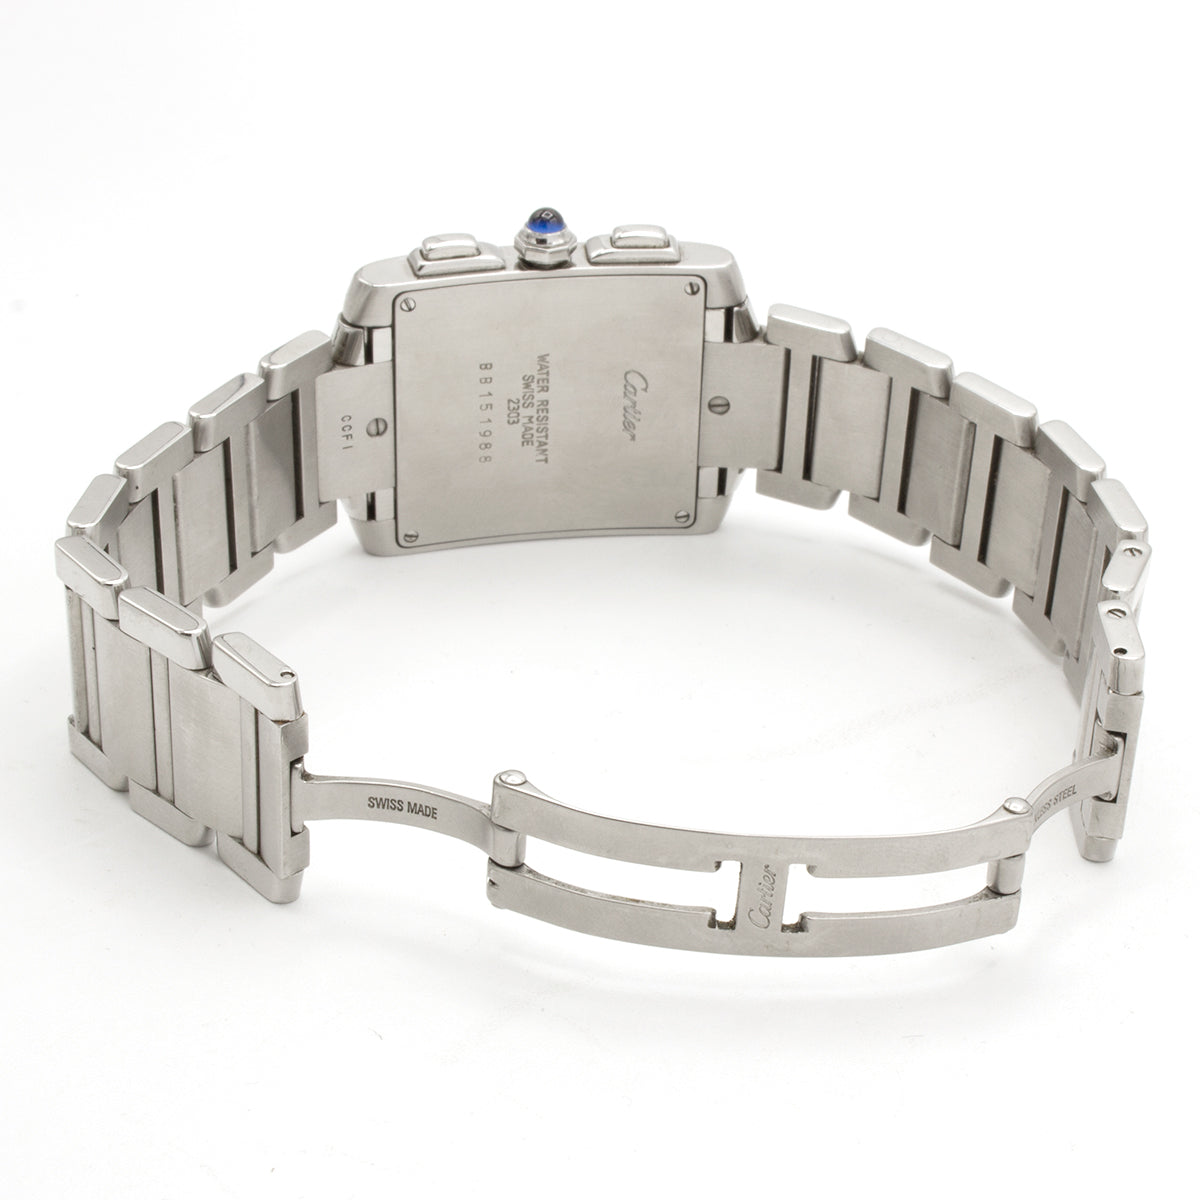 Cartier Tank Chronoreflex 2303 watch